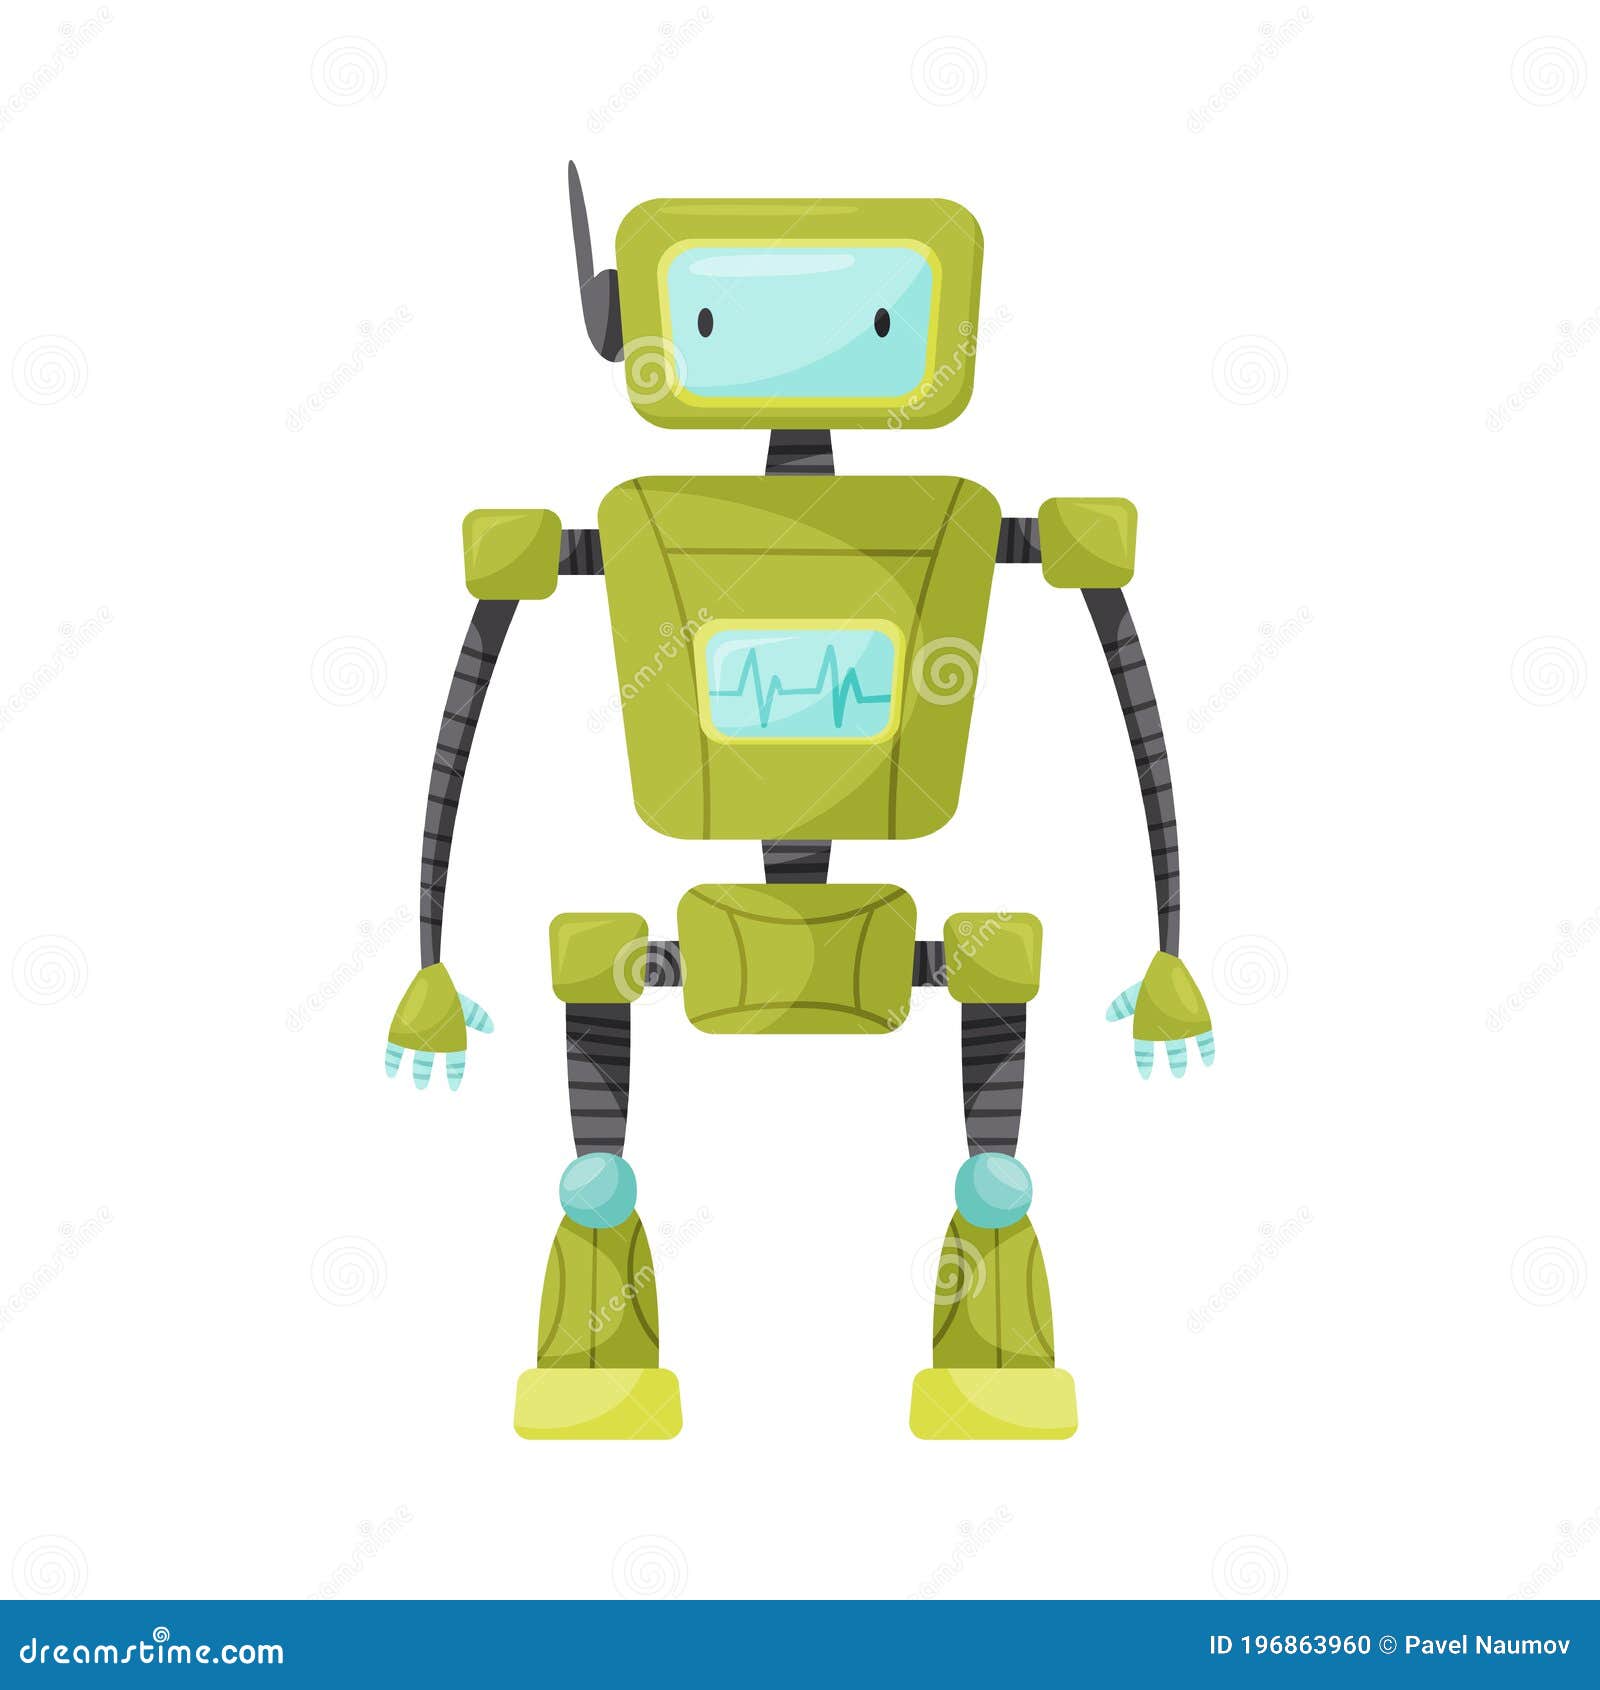 Гуманоид робот. Киборг. Электронные железа ба человек - изображение в векторном виде